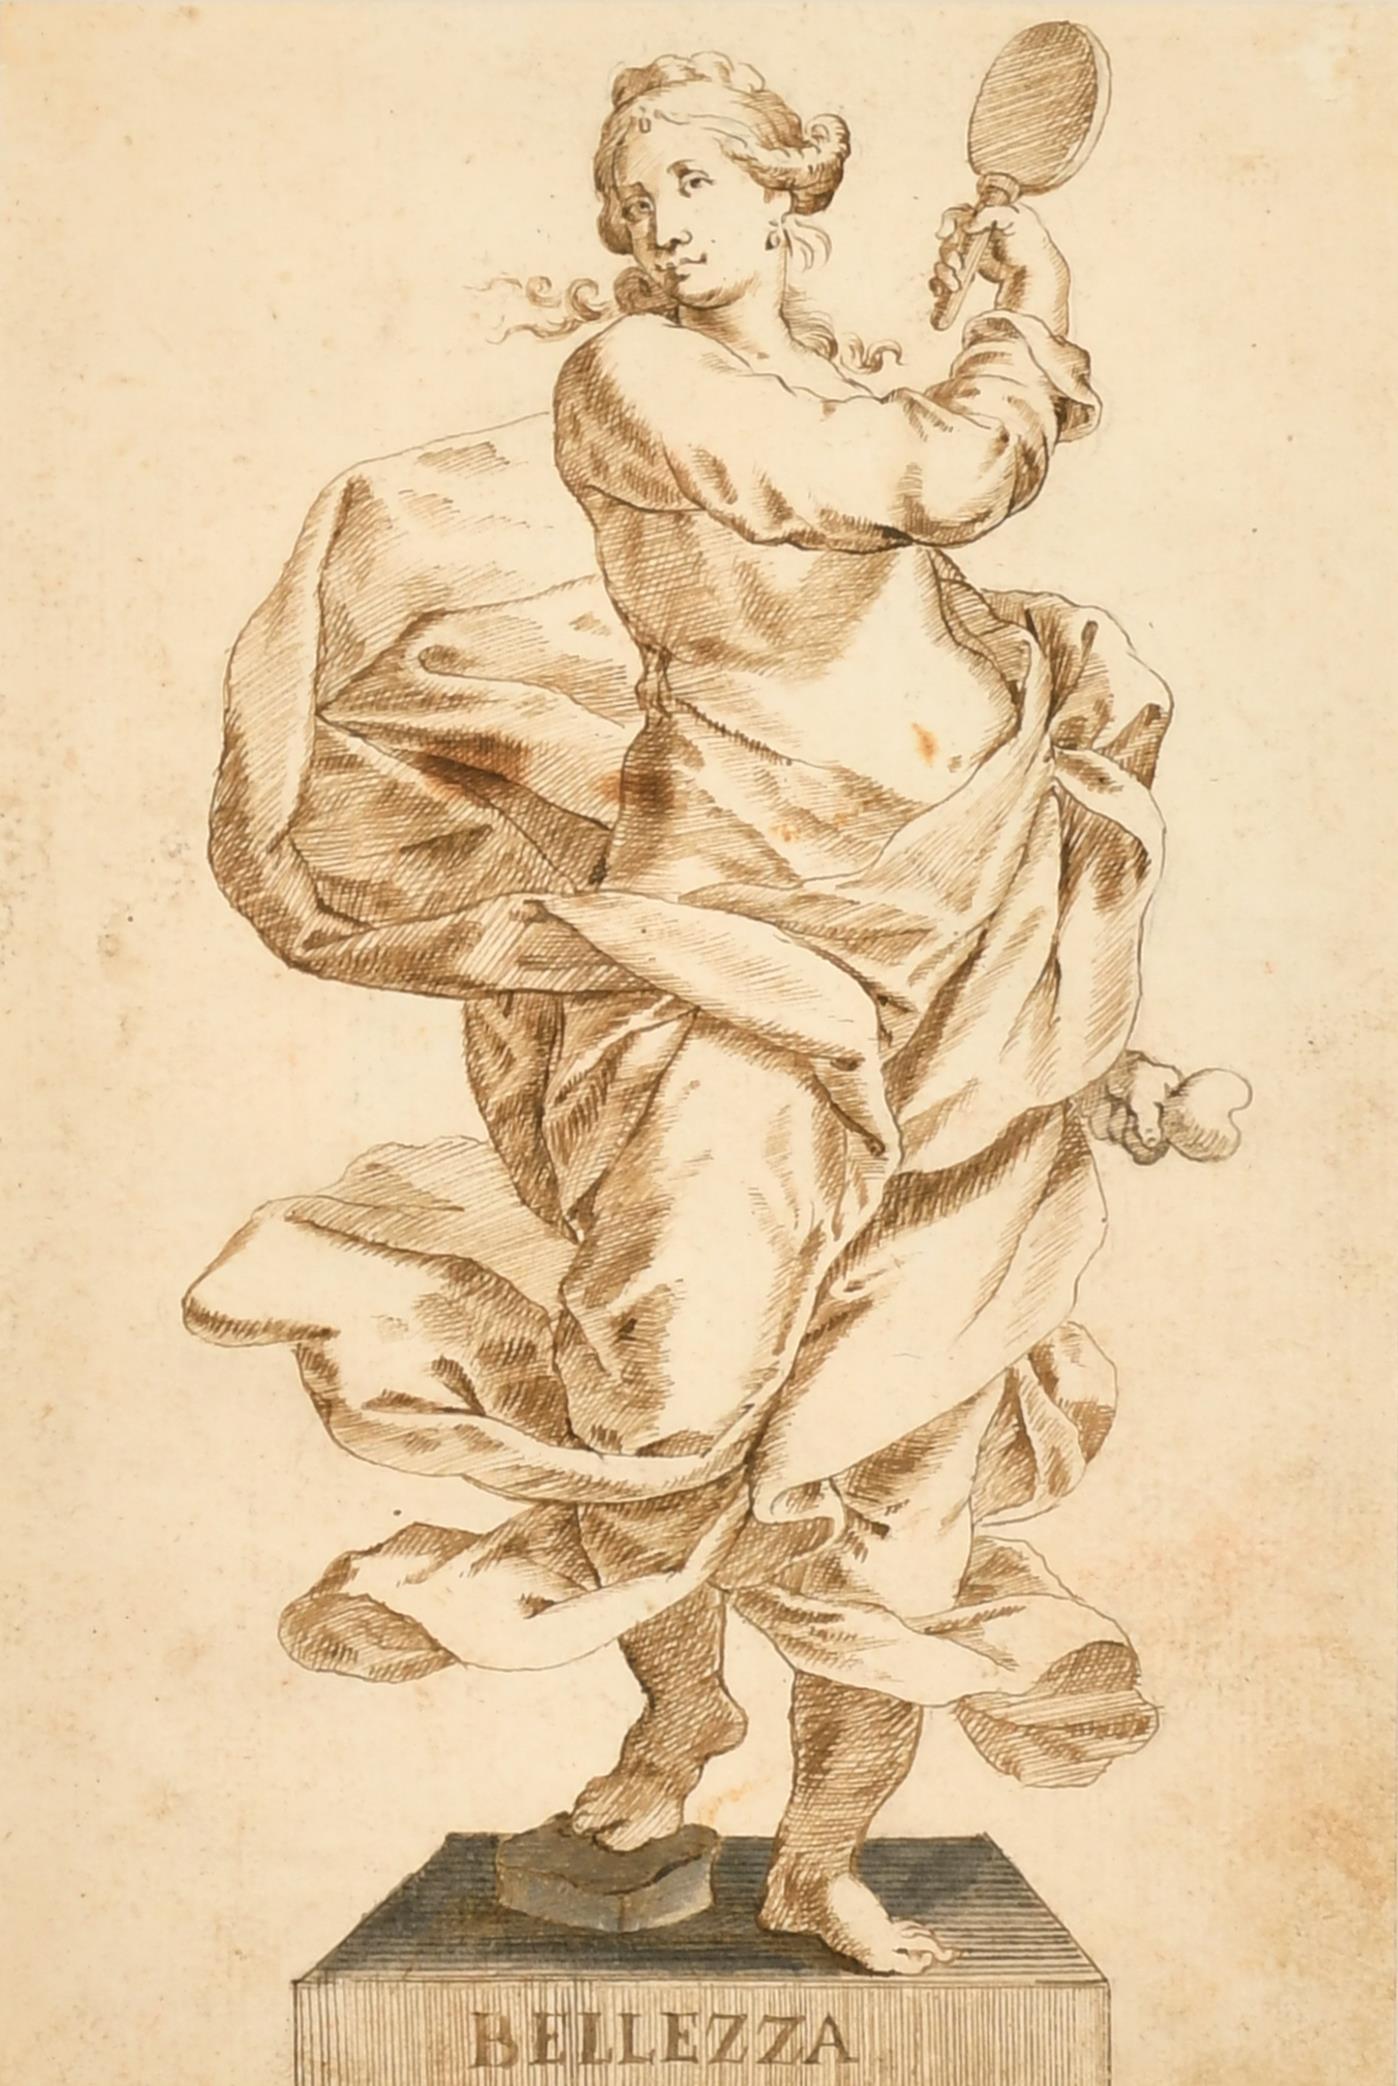 Belle statue de femme romaine de beauté italienne des années 1700 à l'encre et au lavis, dessin de maître ancien